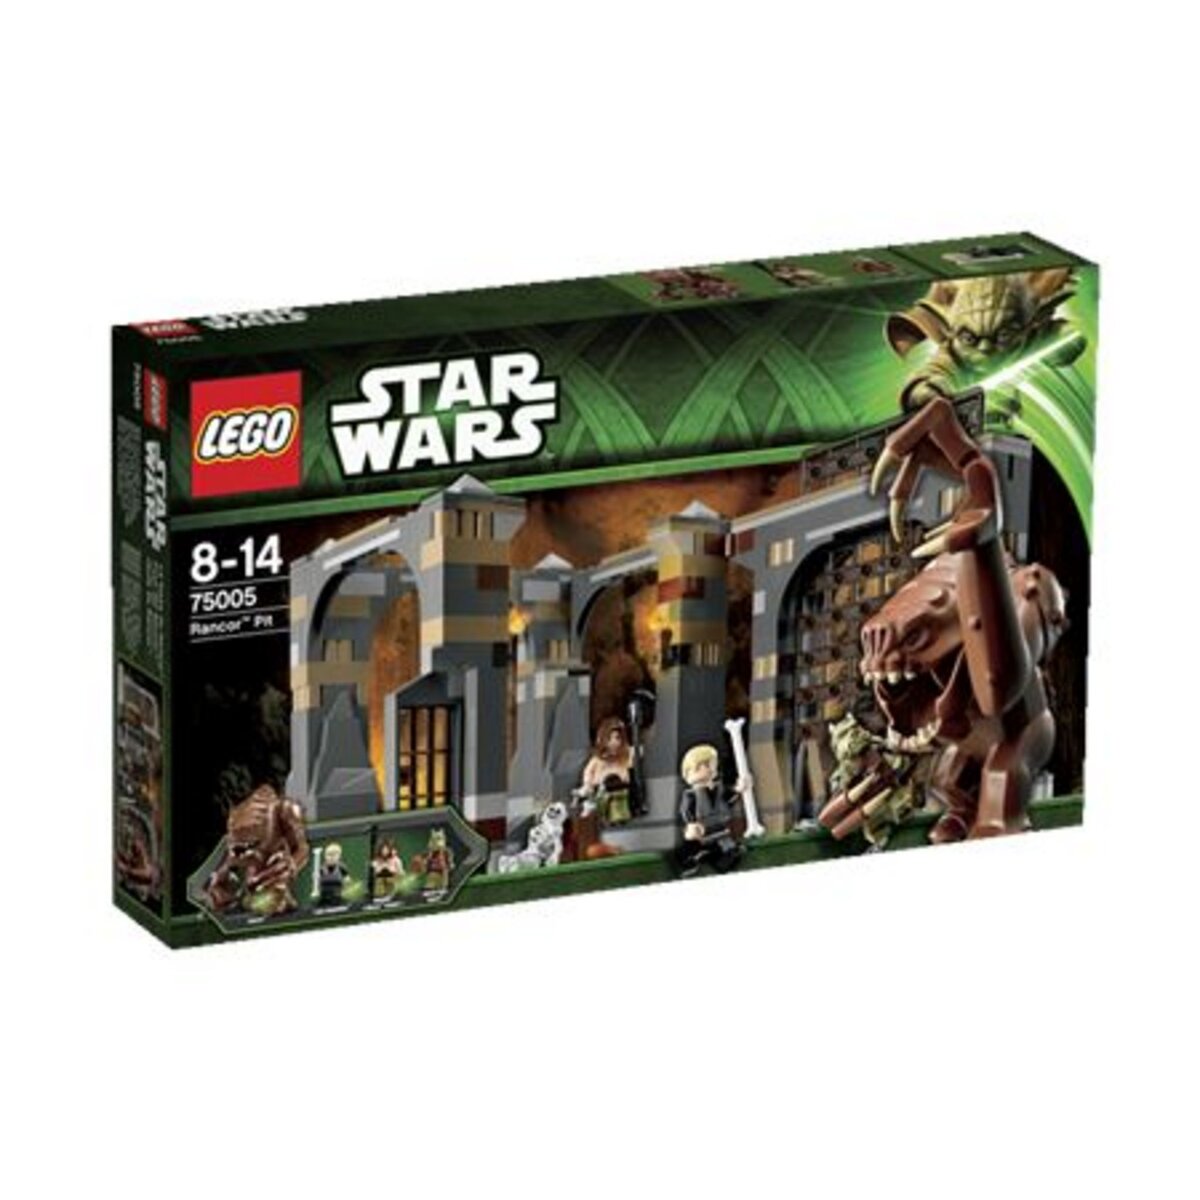 LEGO Star Wars 750005